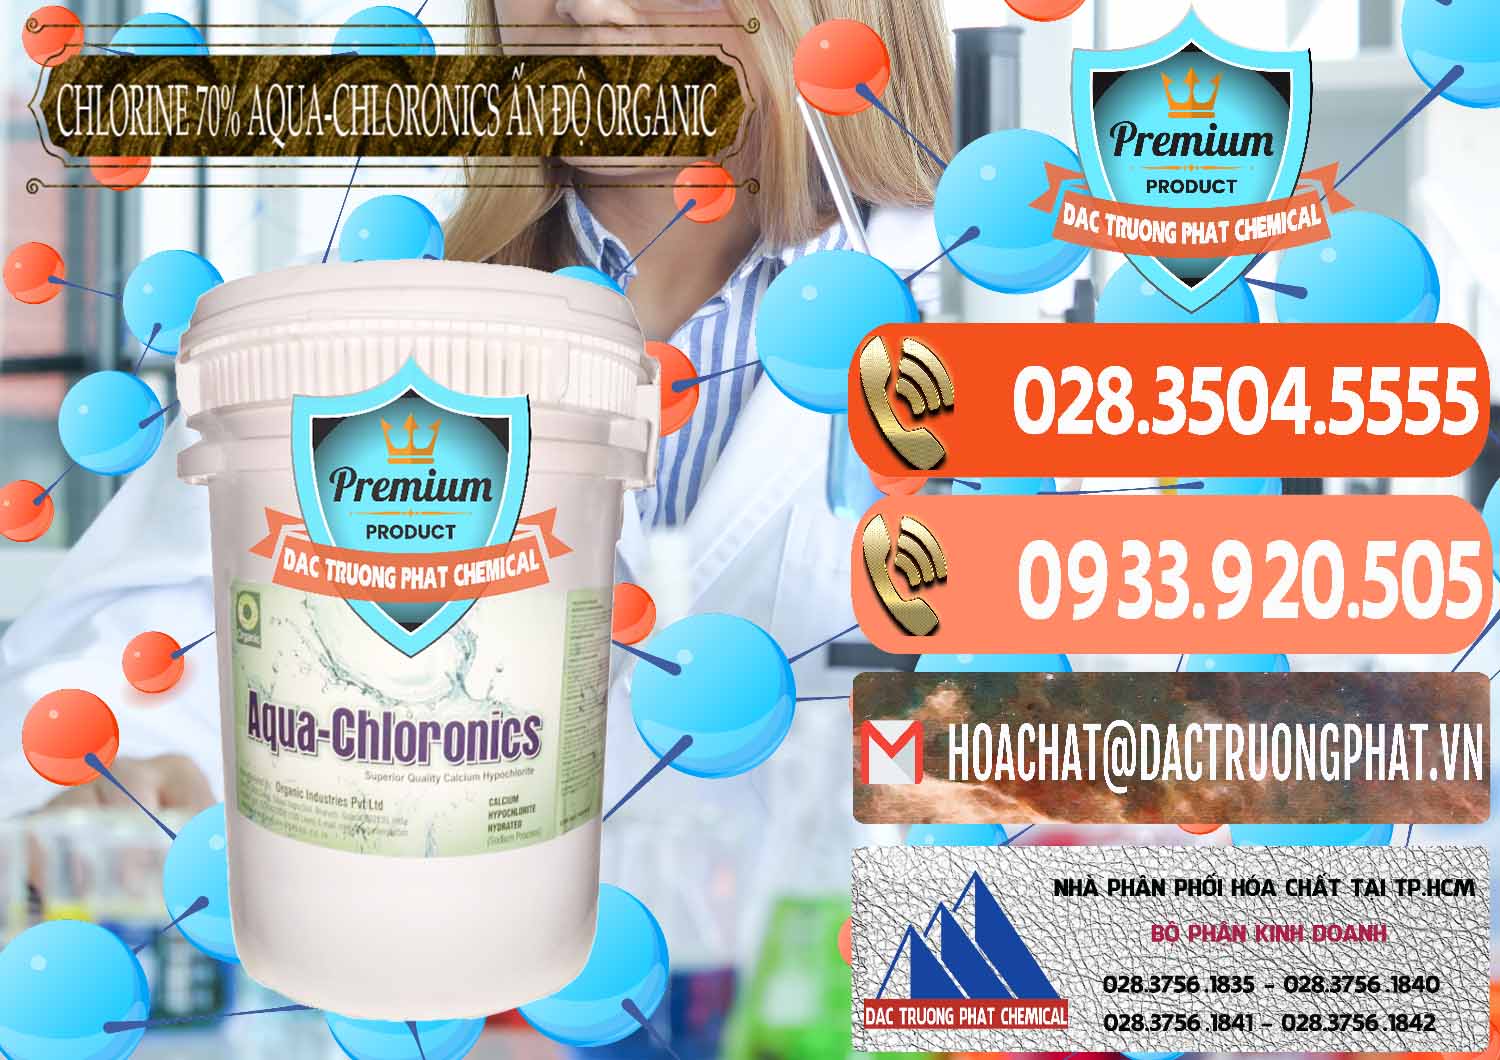 Cty chuyên phân phối & bán Chlorine – Clorin 70% Aqua-Chloronics Ấn Độ Organic India - 0211 - Đơn vị phân phối và bán hóa chất tại TP.HCM - hoachatmientay.com